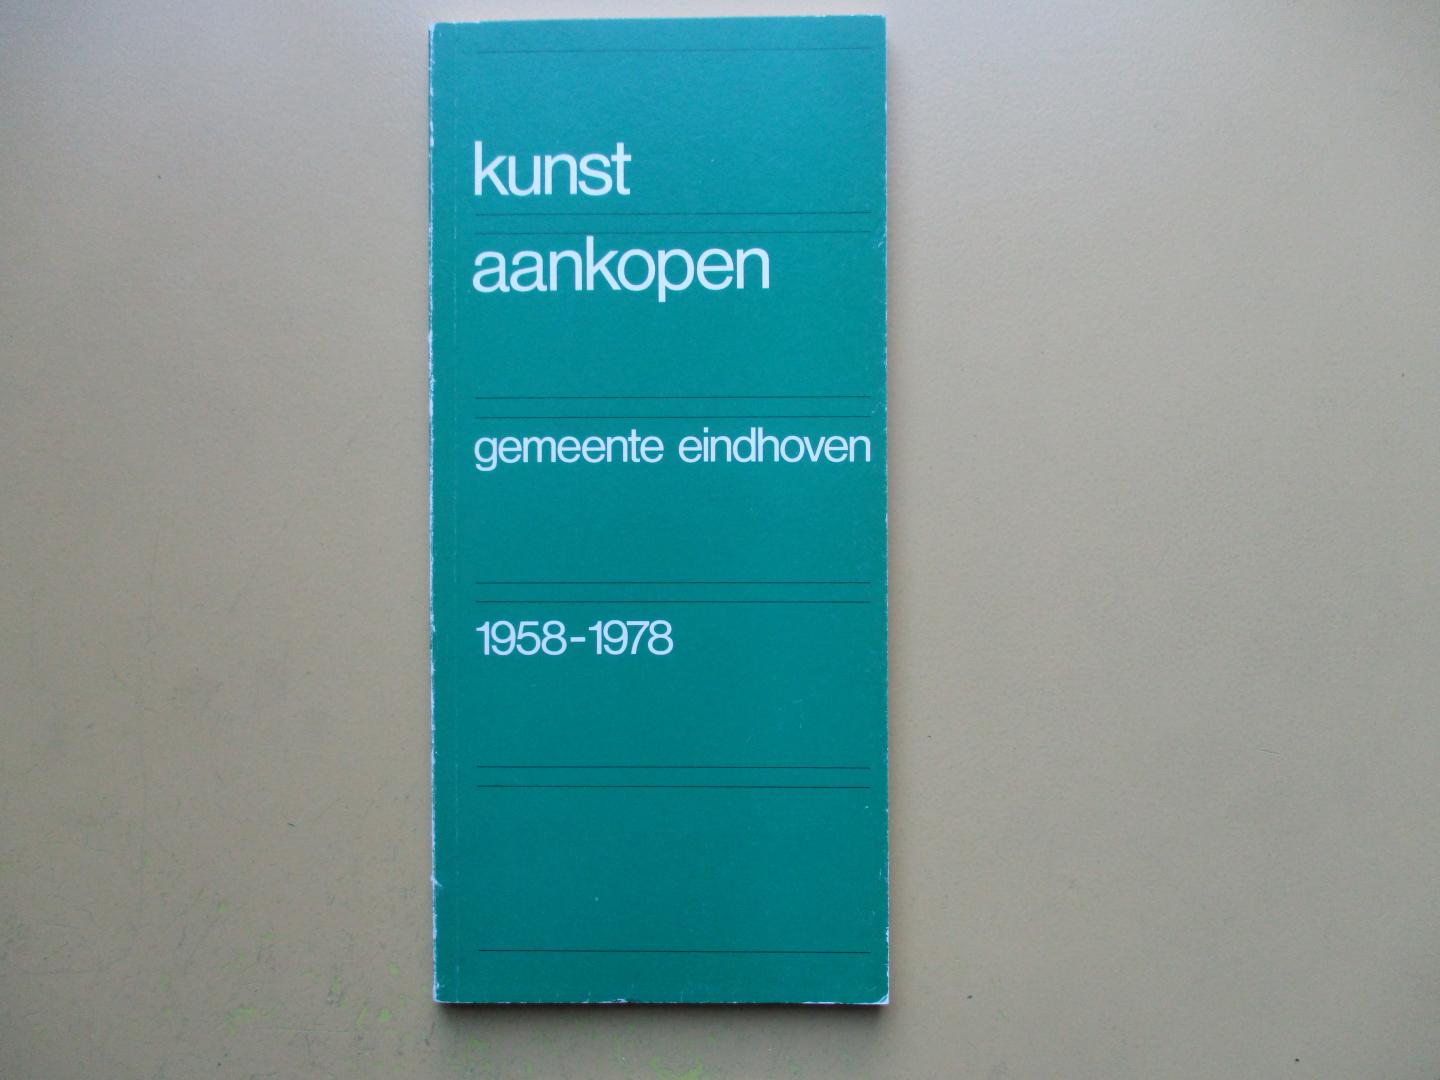 Sies, B. H. M. , directeur Kunststichting - Kunstaankopen gemeente Eindhoven 1958-1978